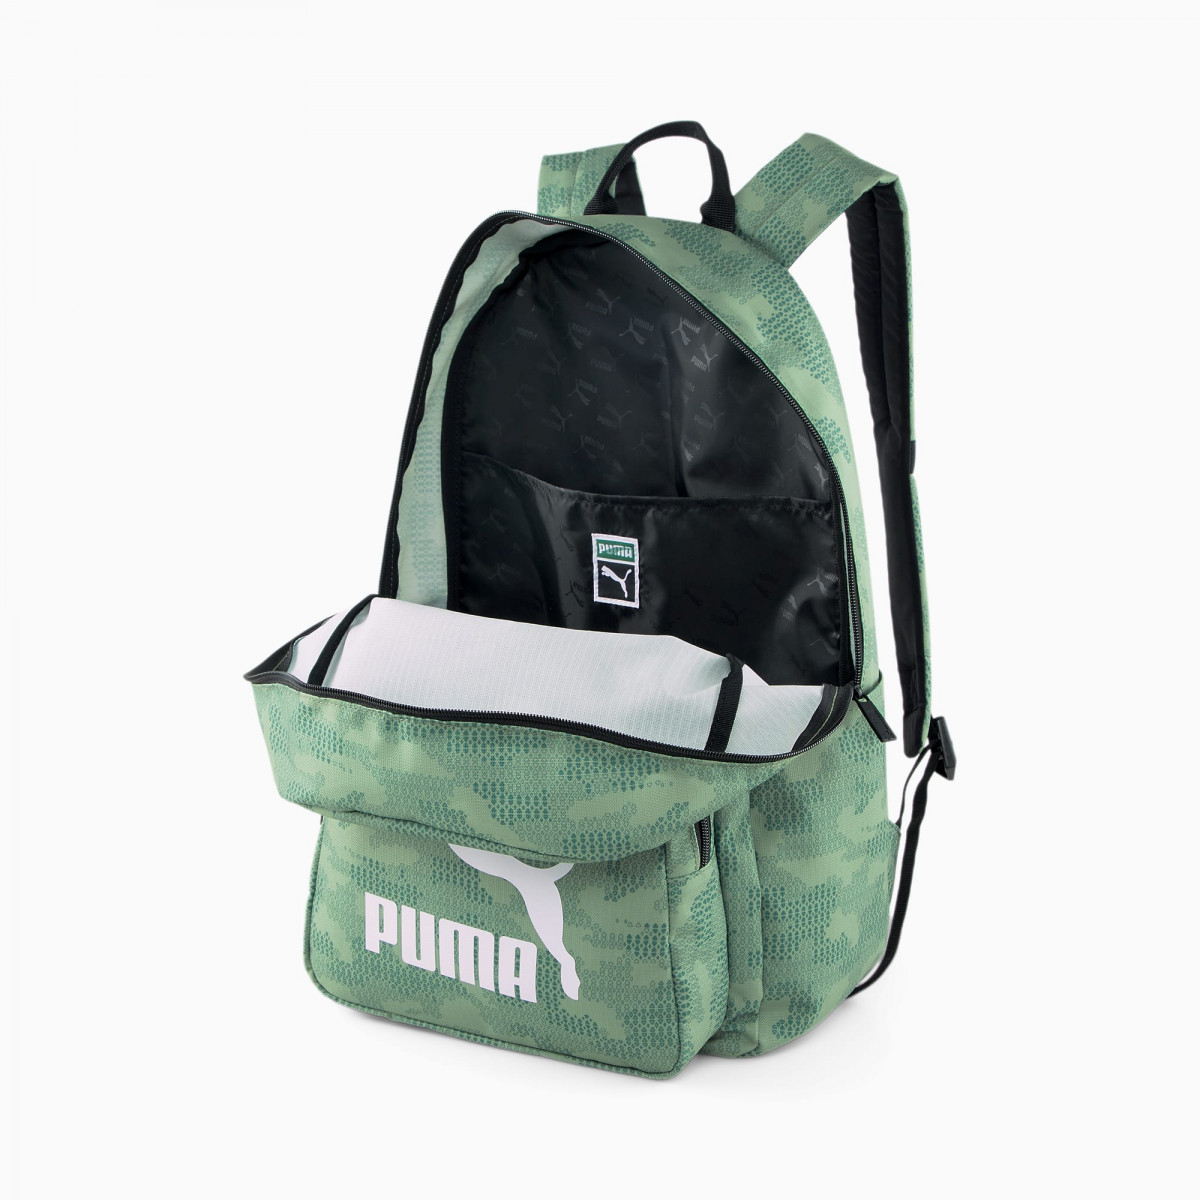 Puma klasszikus laptoptartós hátizsák szőlőzöld